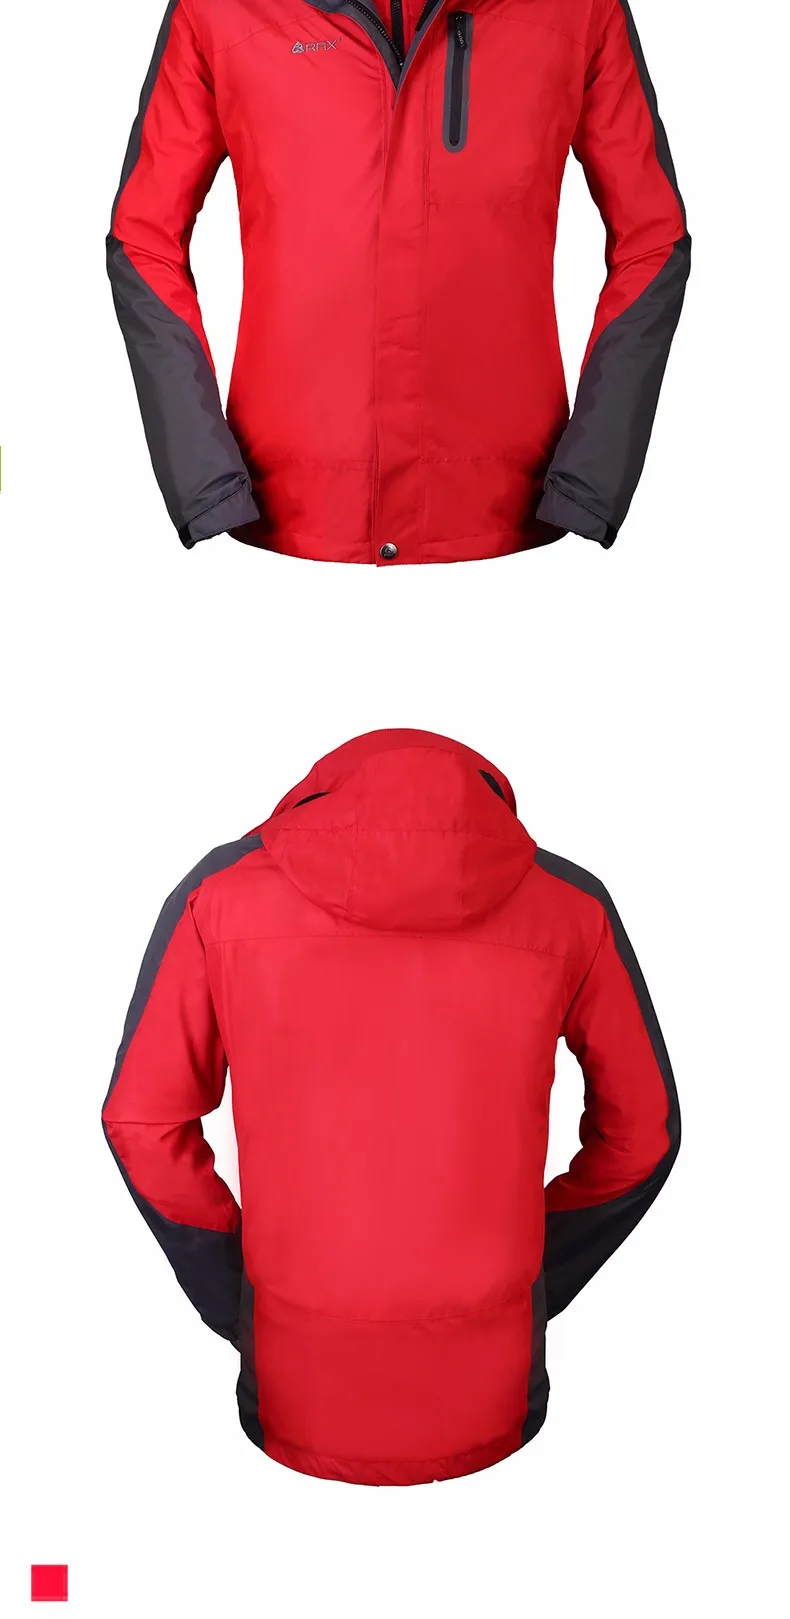 RAX зима Водонепроницаемый открытый Пеший Туризм флисовая куртка для Для мужчин и Для женщин ветровка 3 in1 куртка Для женщин Для мужчин флис Куртки Для женщин